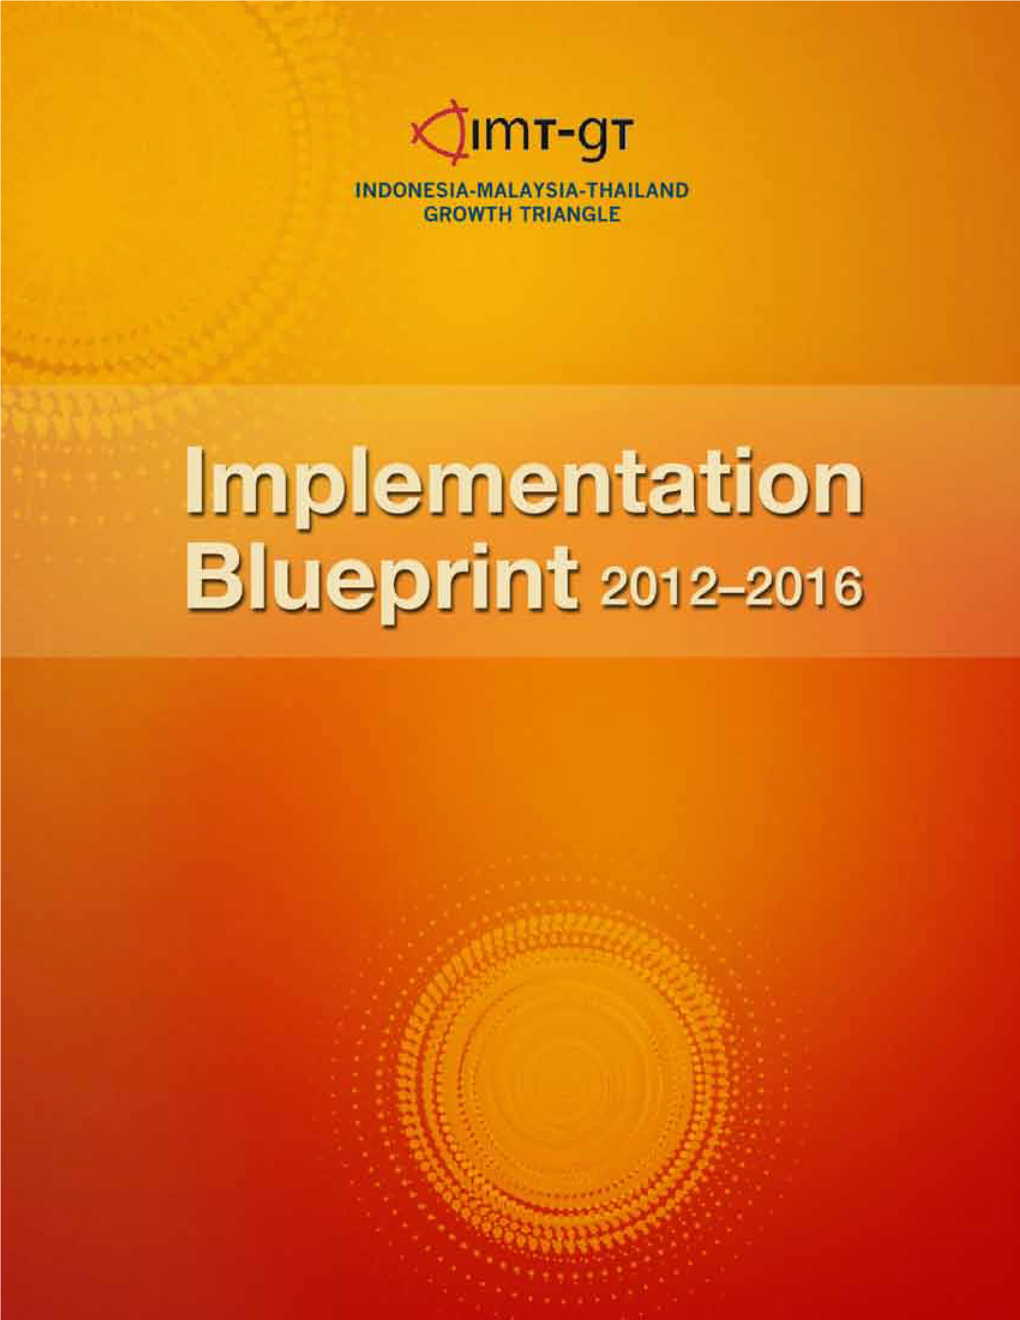 (IMT-GT): Implementation Blueprint 2012-2016